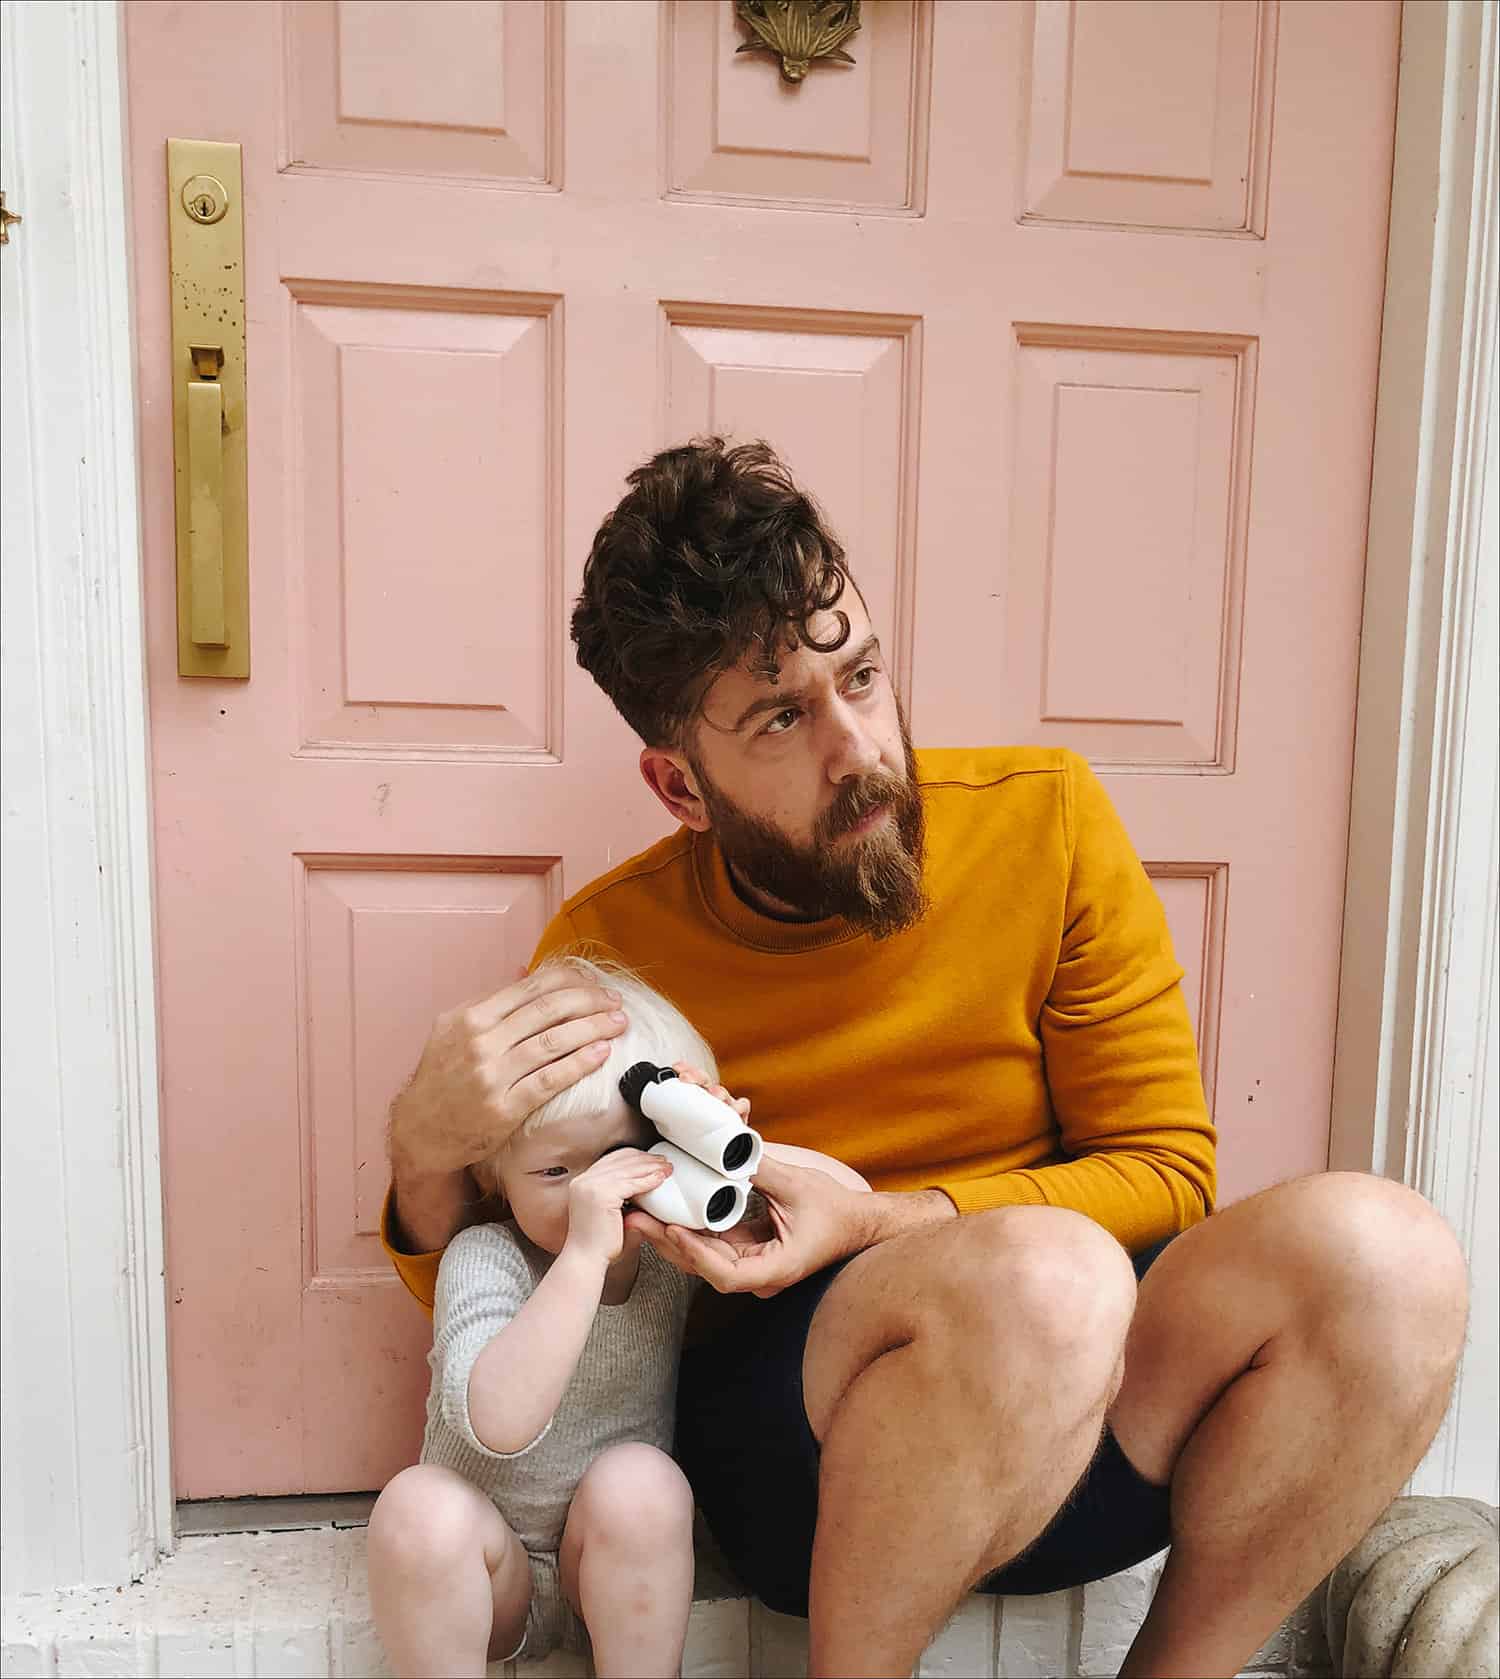 pria yang duduk di depan pintu merah muda dengan anak memegang teropong